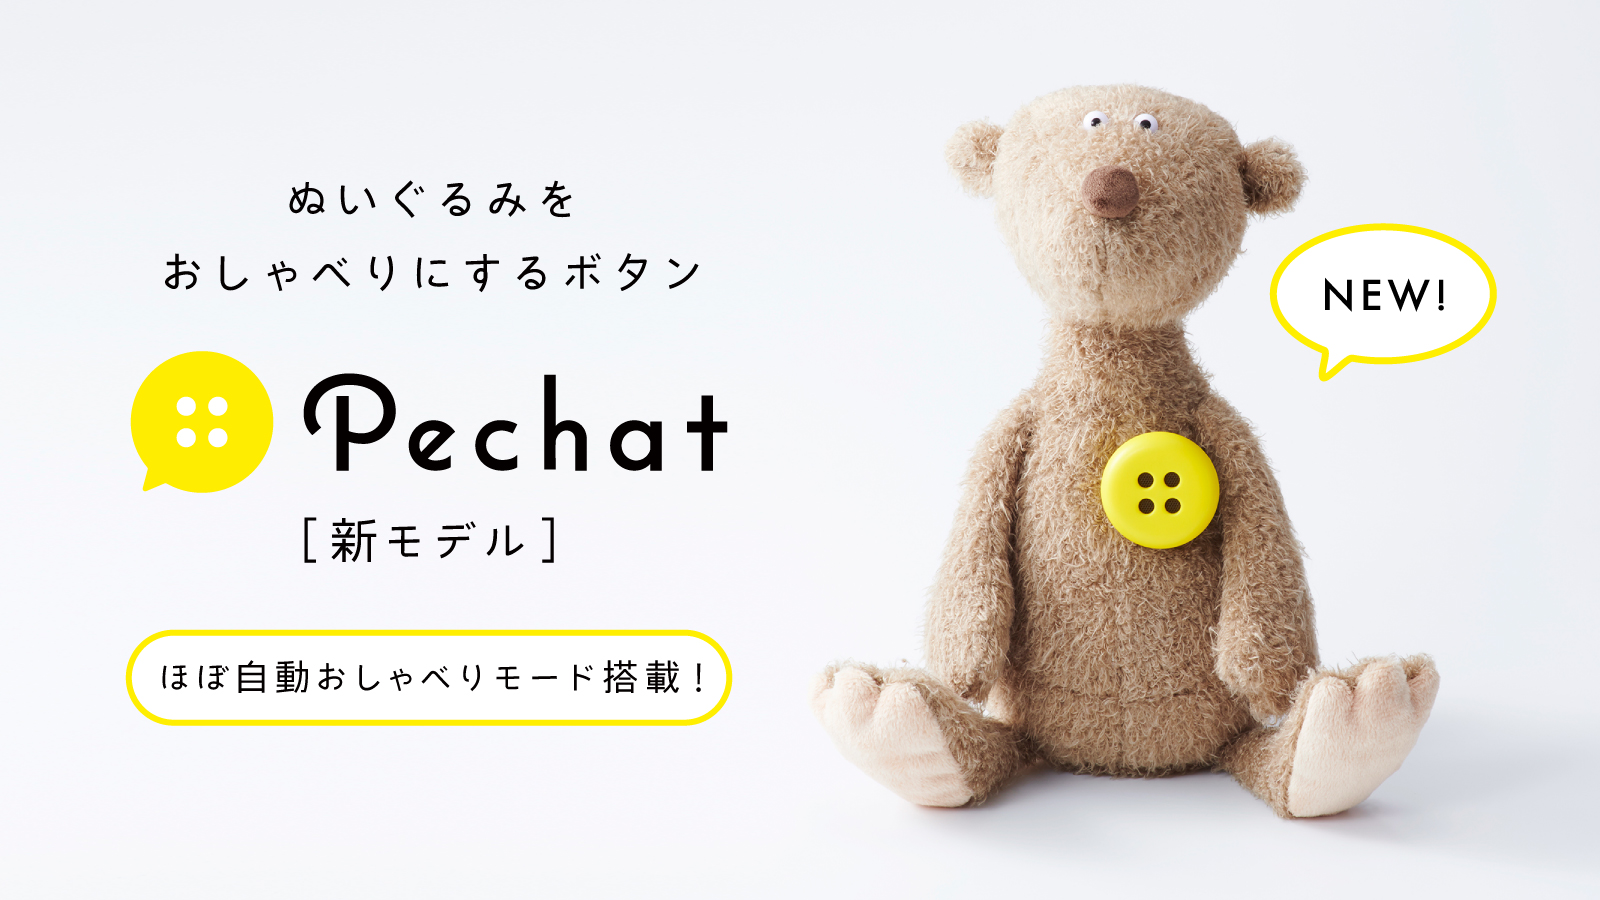 ペチャット(Pechat) 新モデル